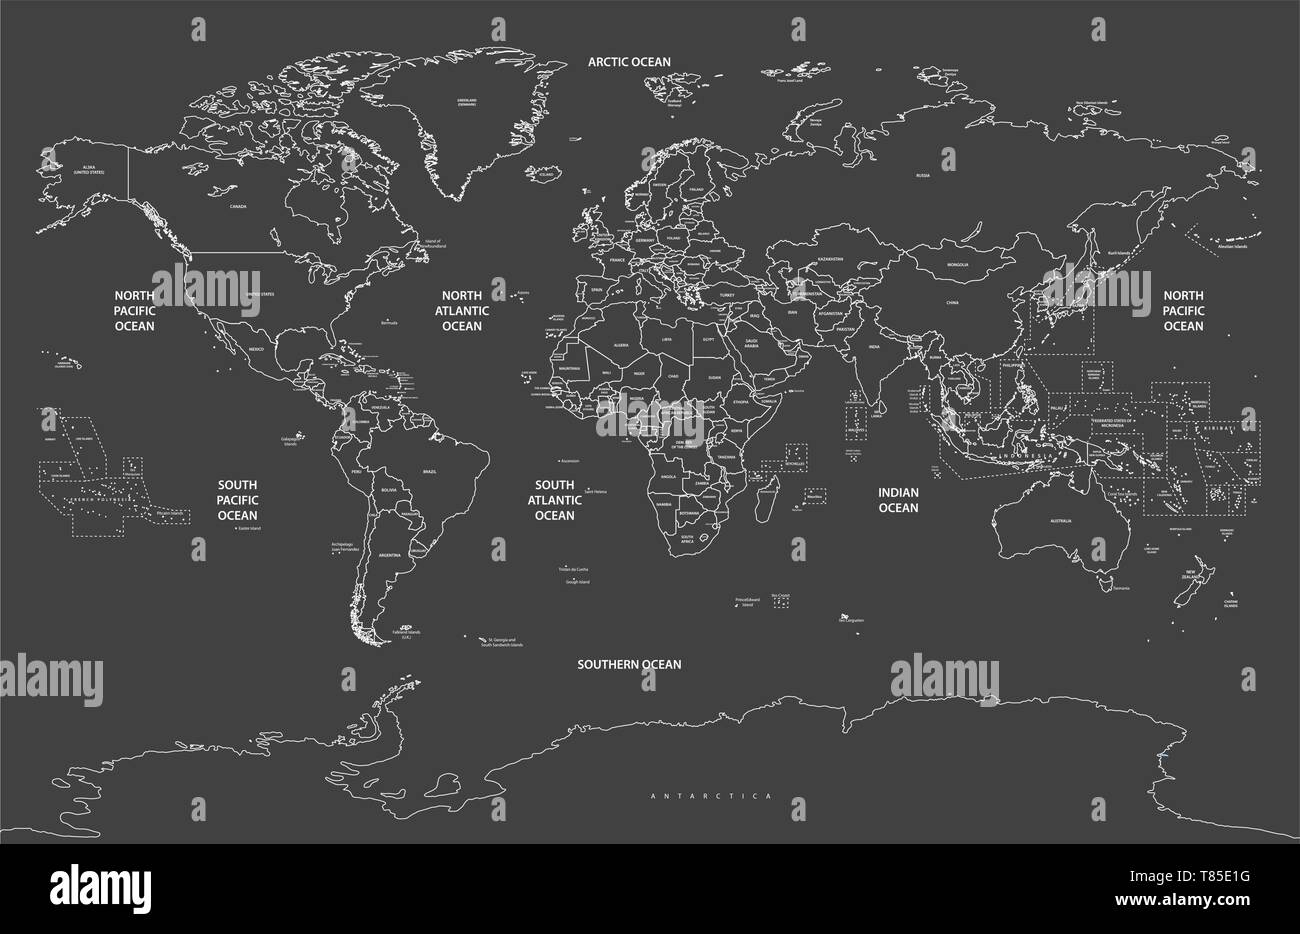 Vektor hoch detaillierte Weltkarte Abbildung Stock Vektor